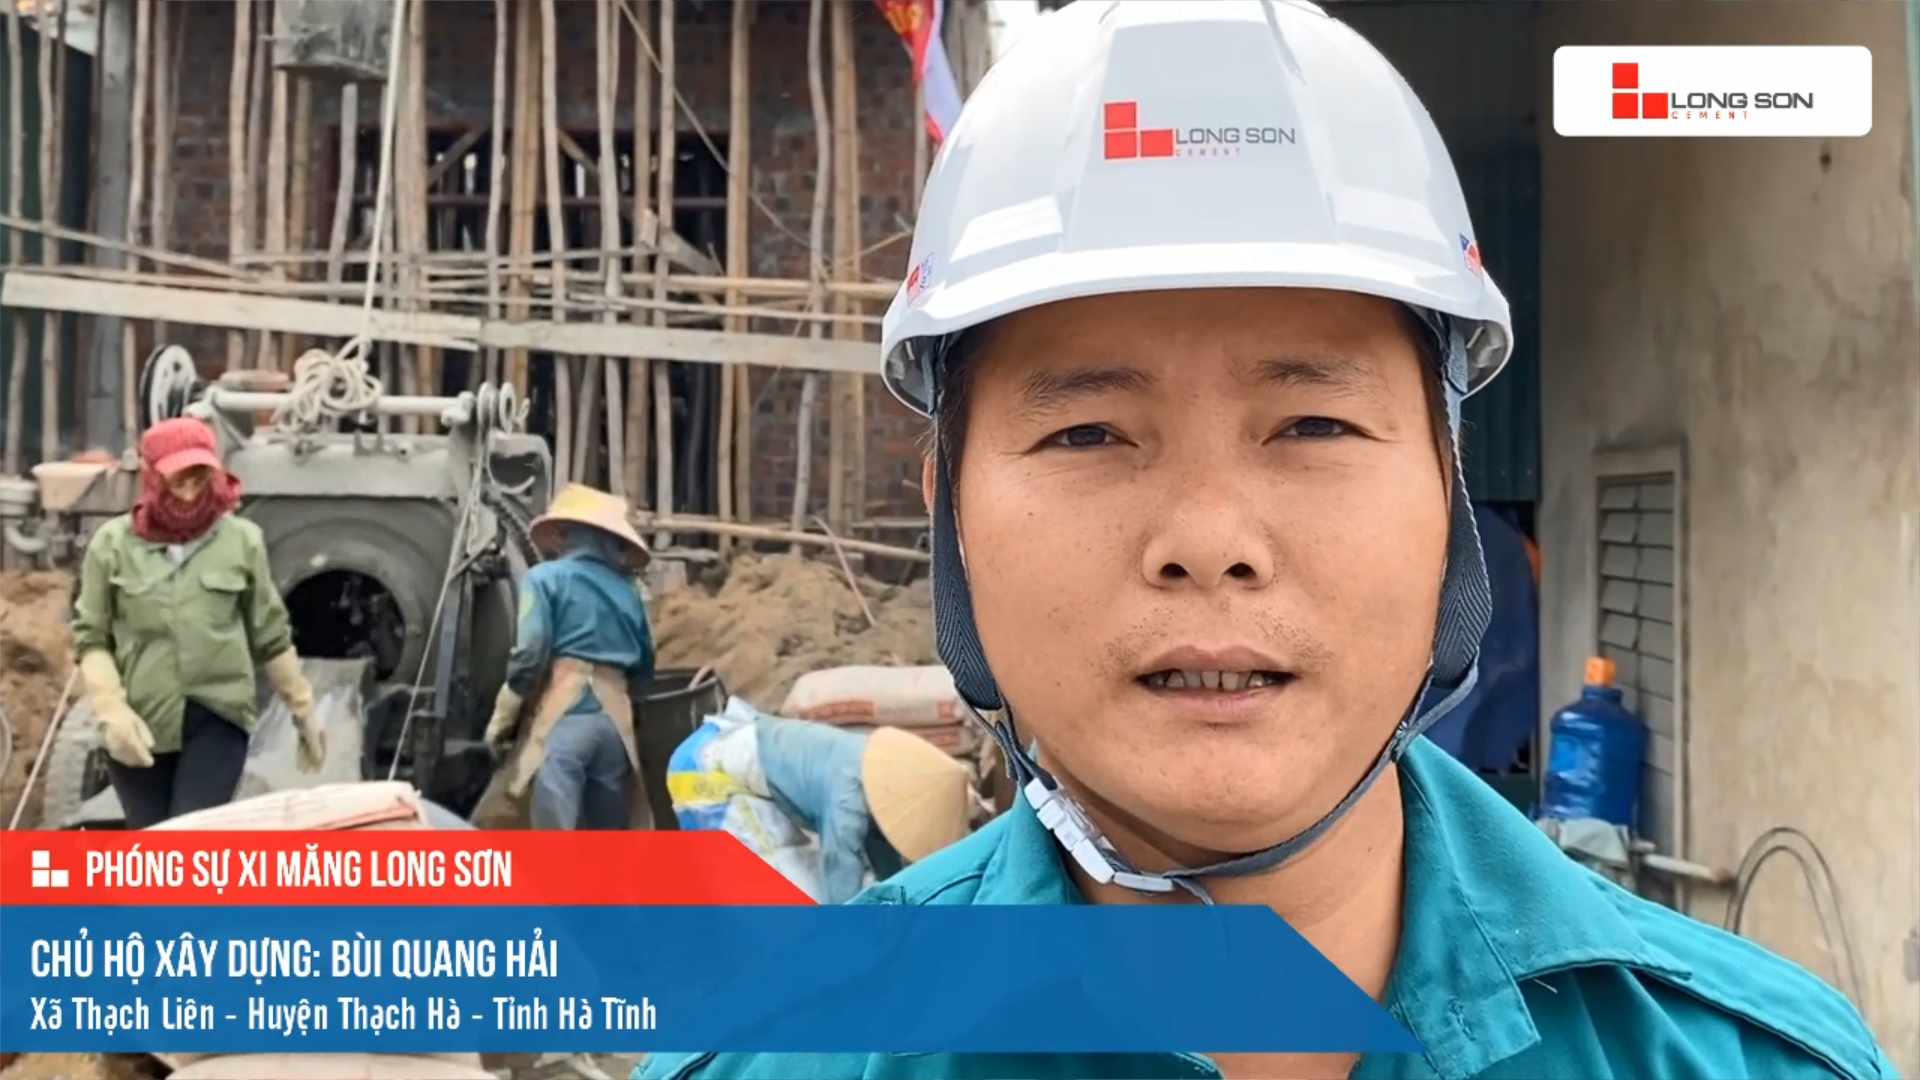 Phóng sự công trình sử dụng Xi măng Long Sơn tại Hà Tĩnh ngày 10/12/2021